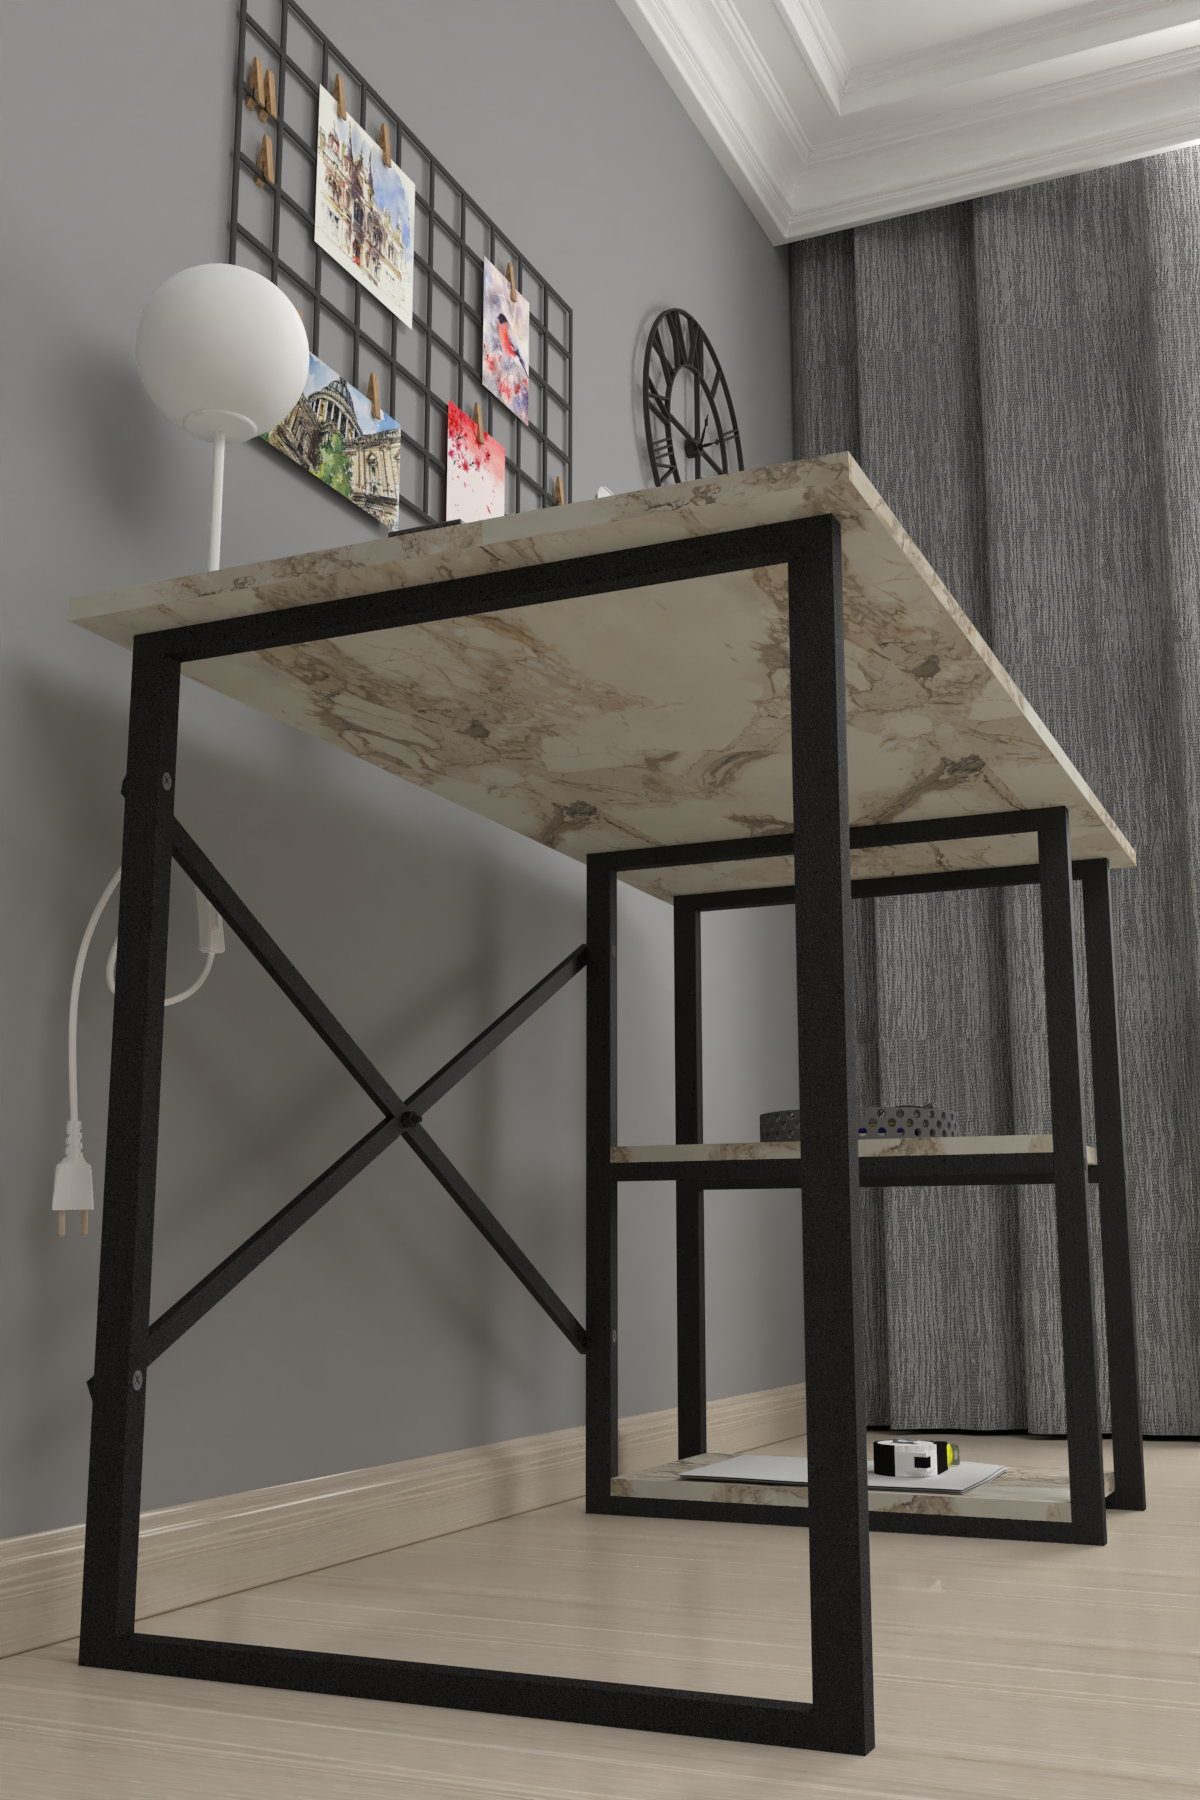 Bofigo 2 Shelf Study Desk 60x120 cm  Efes